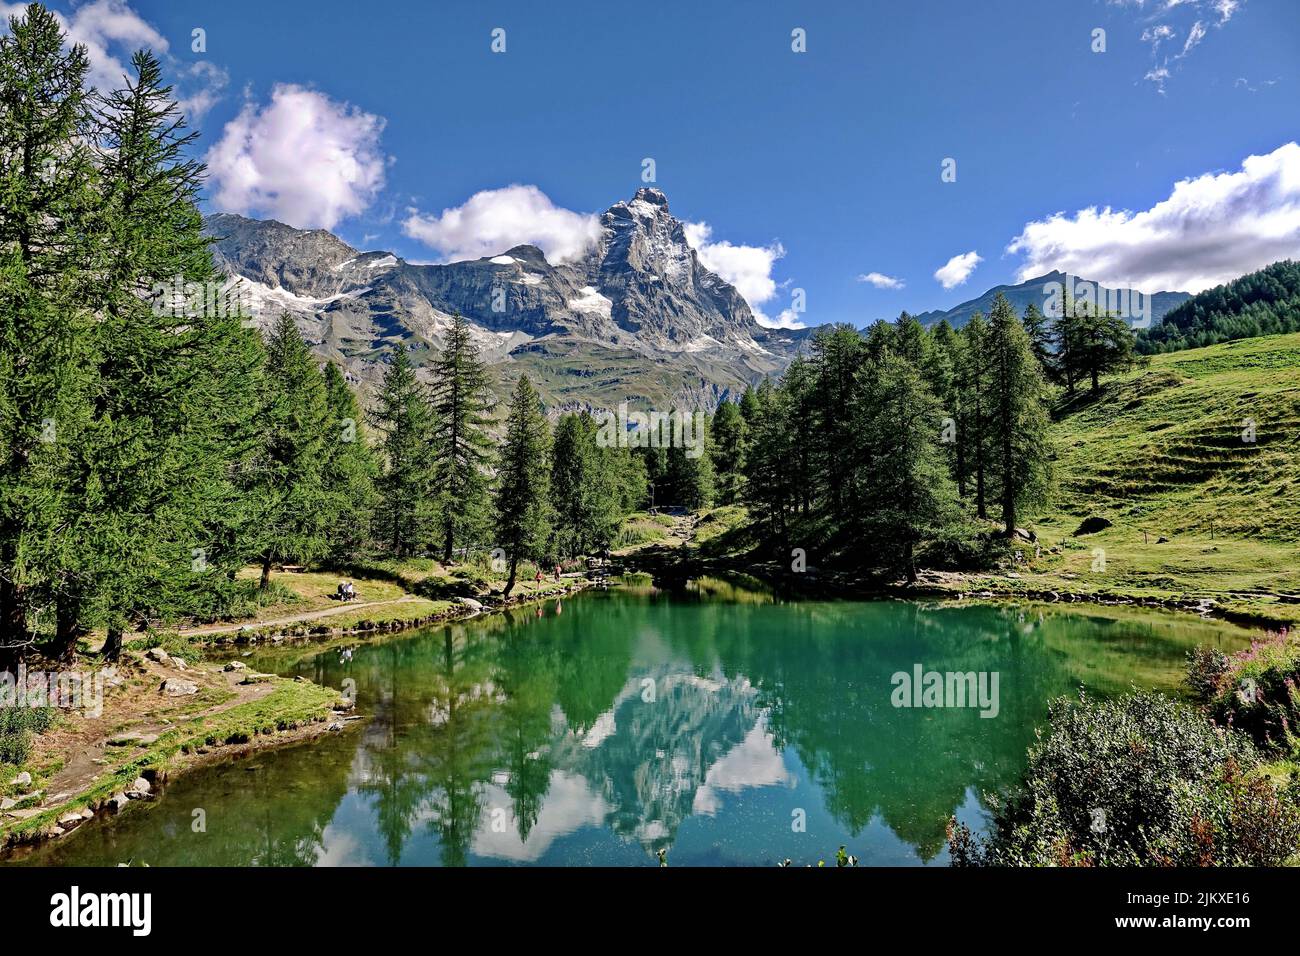 Sommeralpenlandschaft mit dem Matterhorn (Cervino) am Blauen See (Lago Blu) bei Breuil-Cervinia. Aostatal, Italien - August 2022 Stockfoto